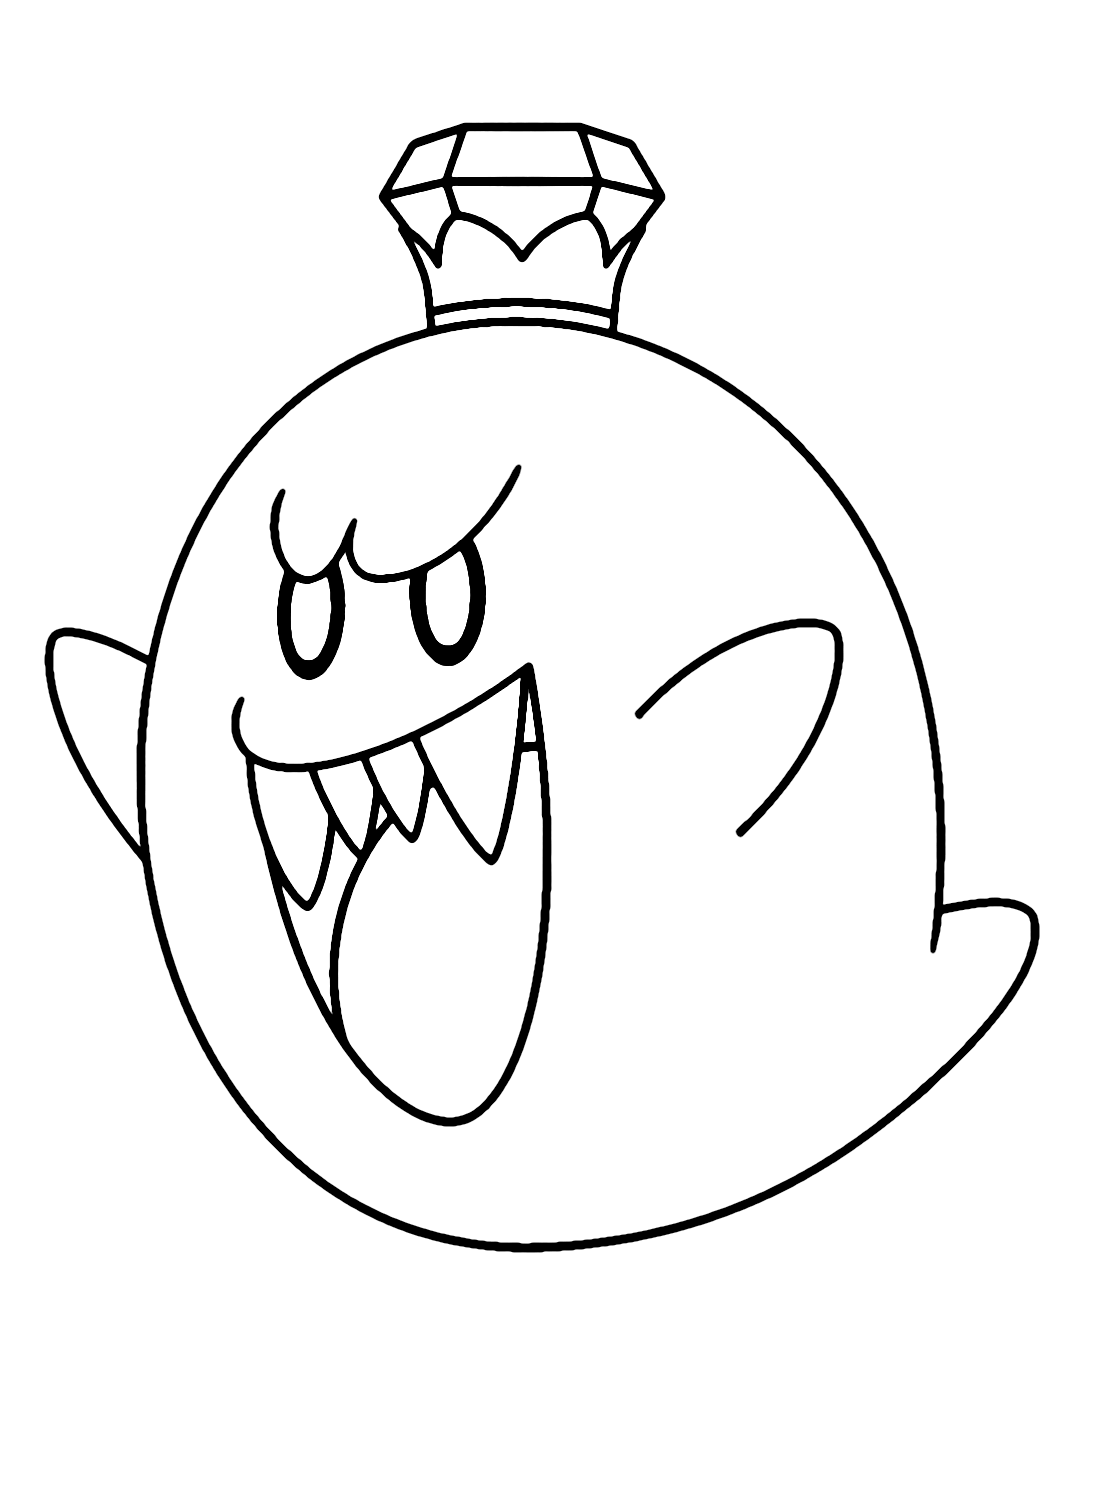 King Boo de Super Mario de King Boo